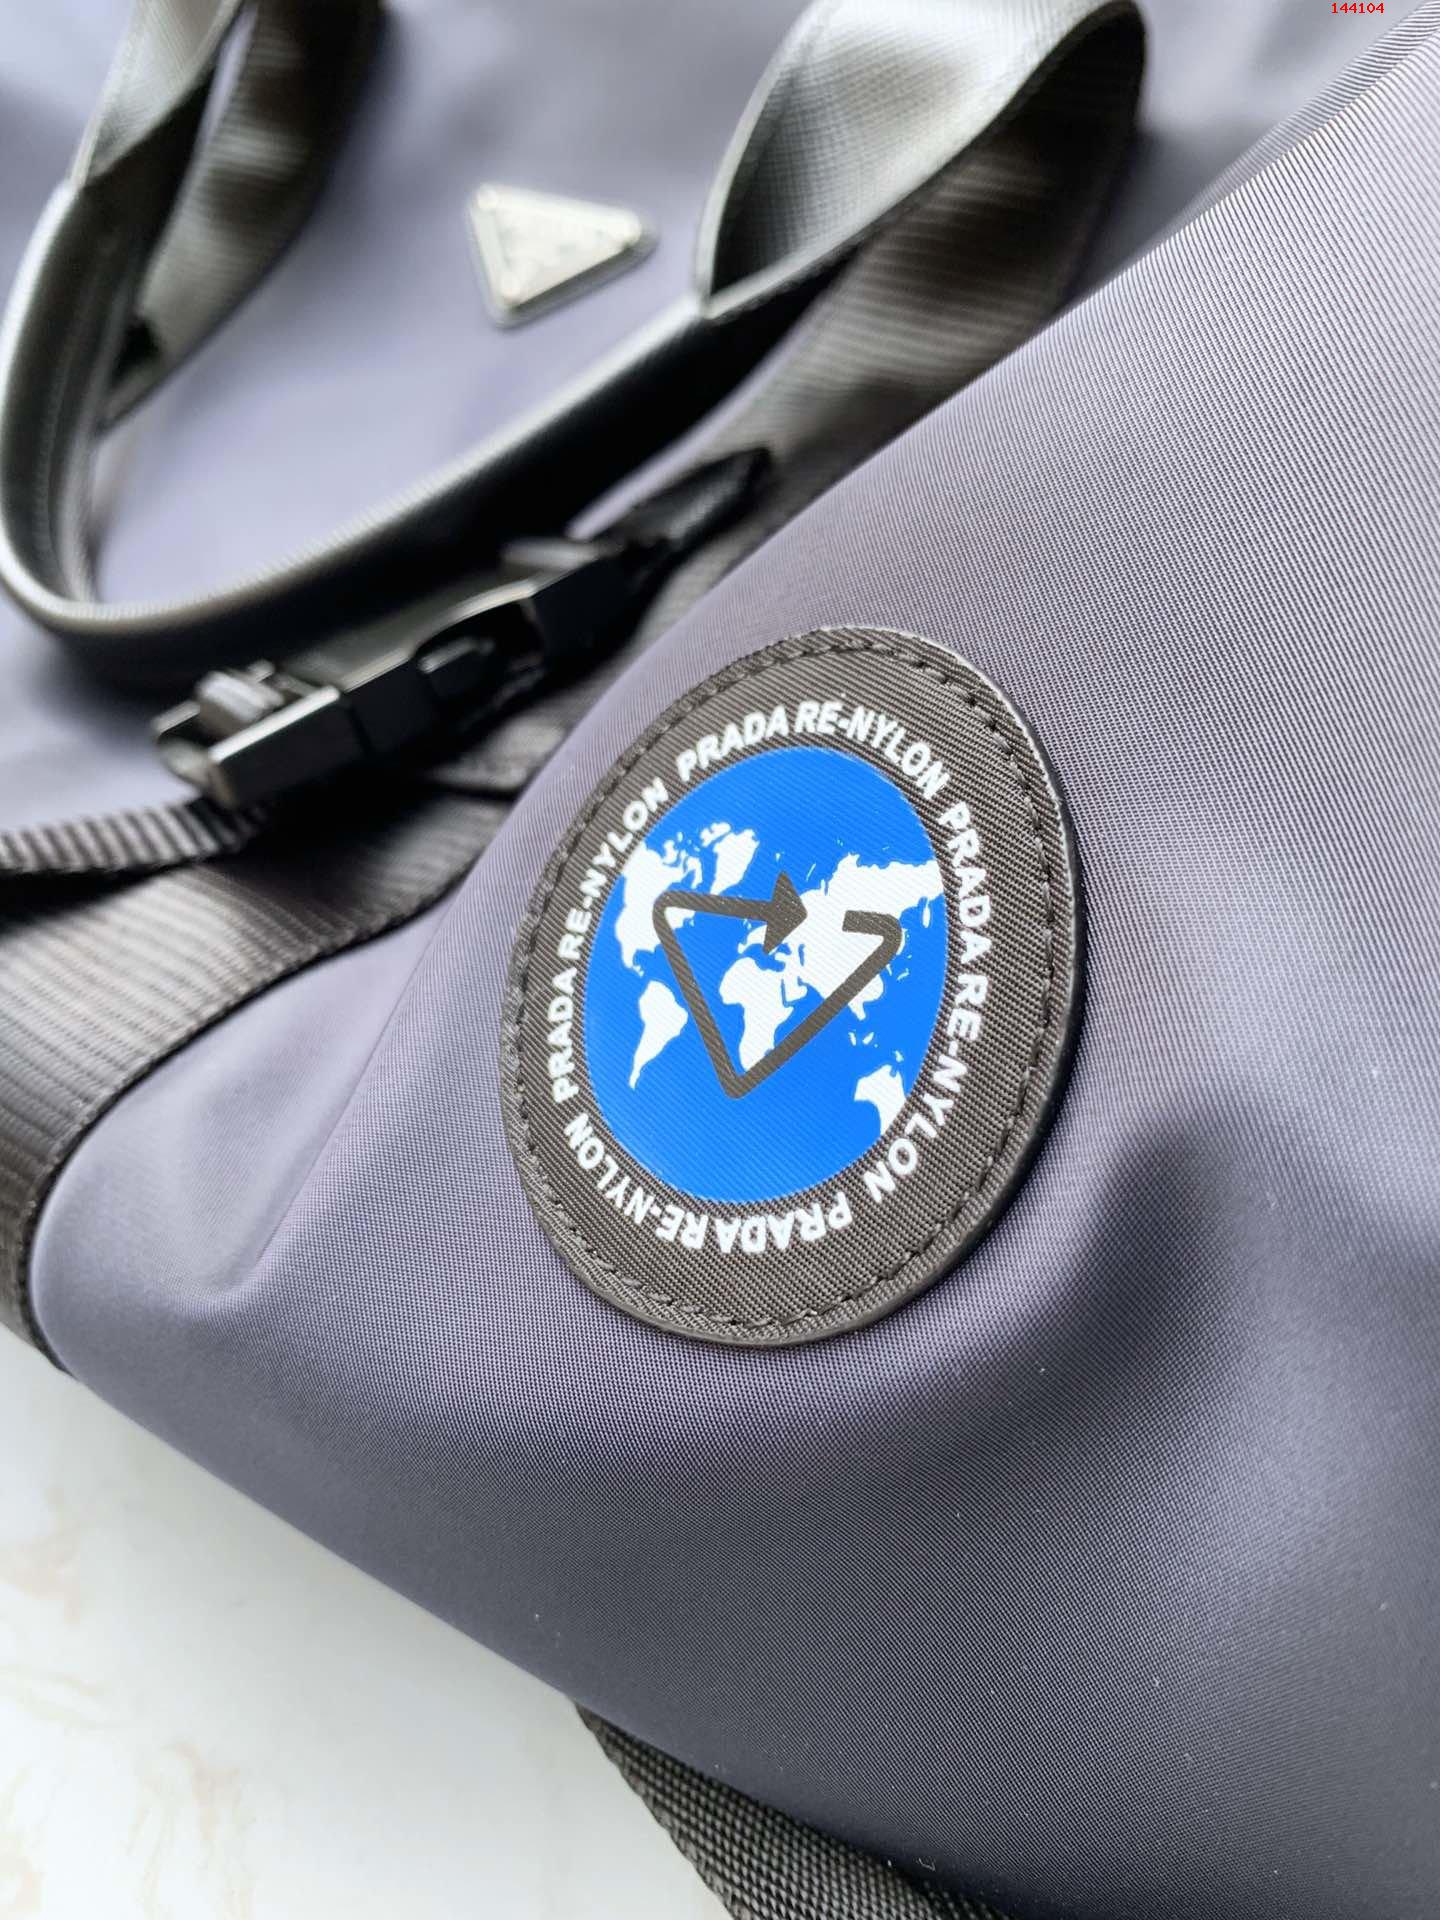 独家首发2VC015新款旅行包这款旅行袋采 高仿品牌包包 精仿名牌男包 